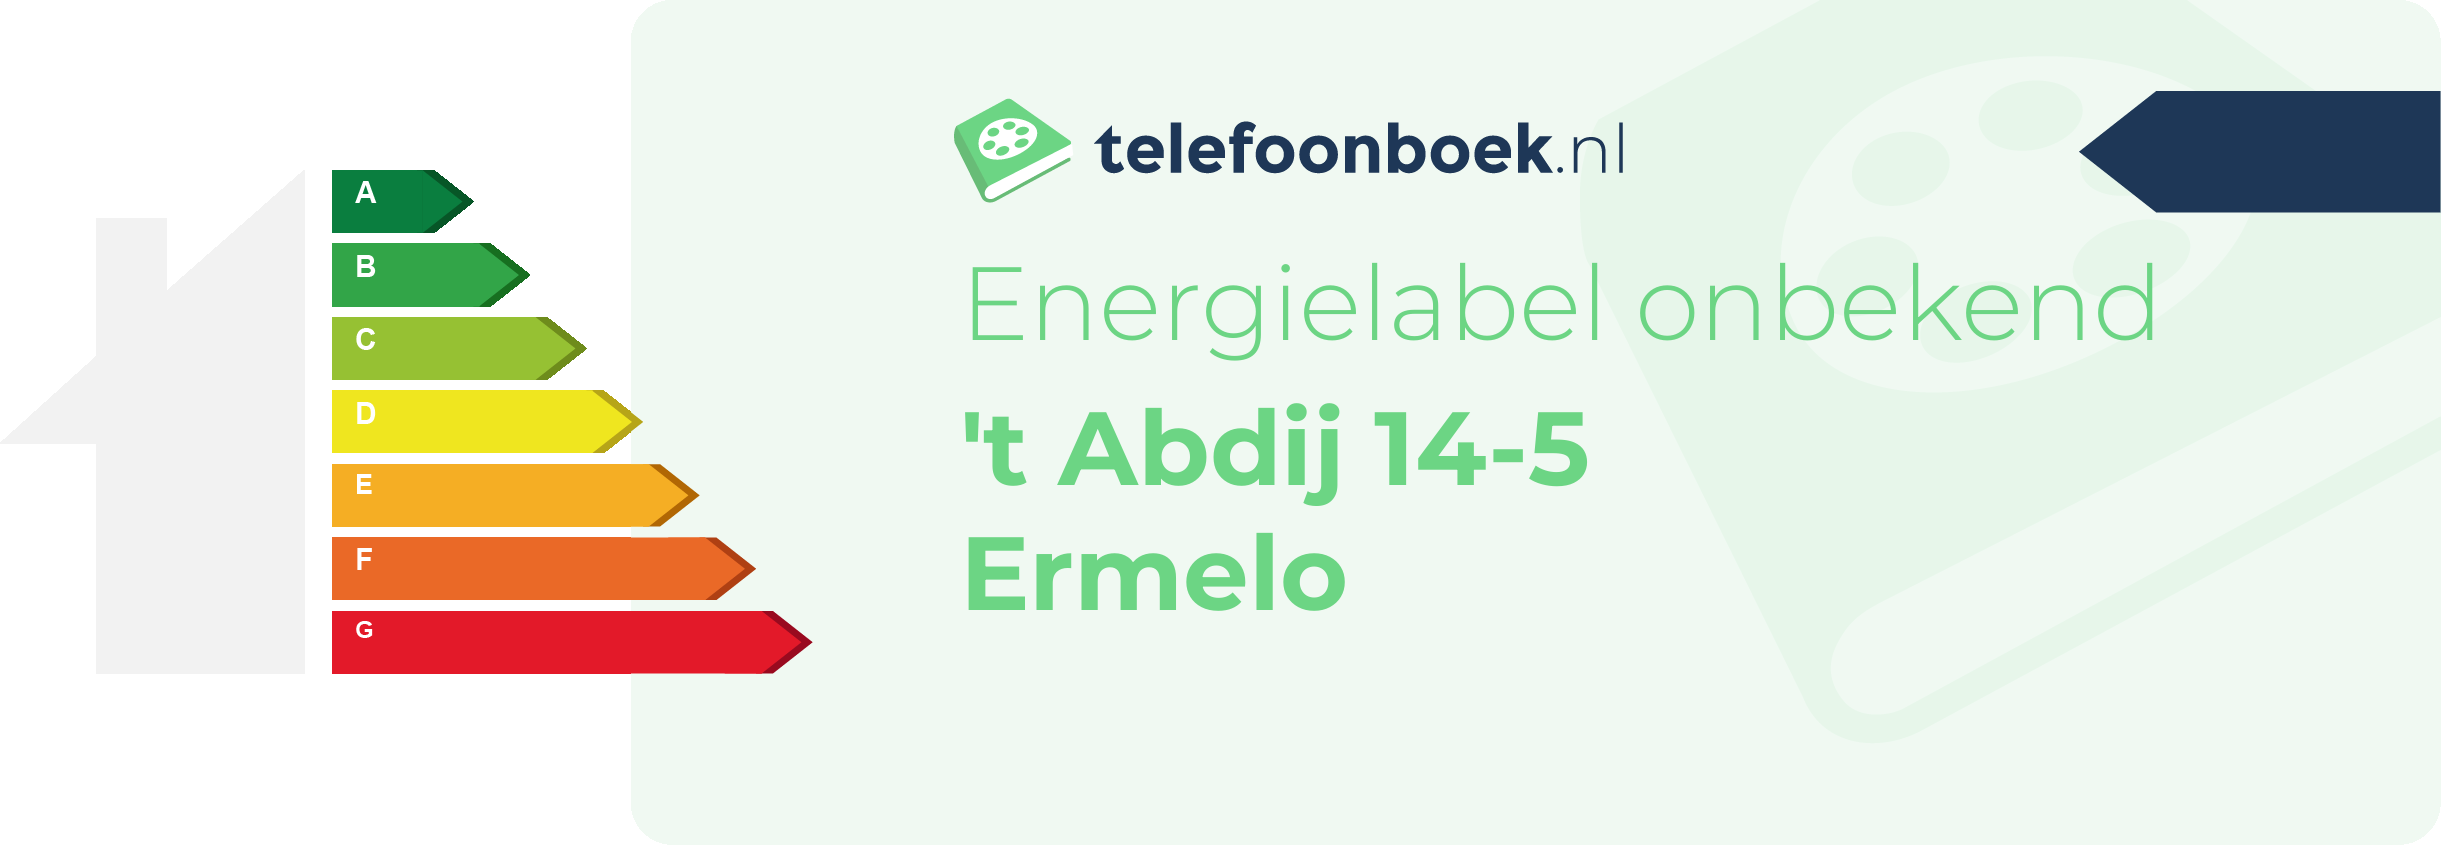 Energielabel 't Abdij 14-5 Ermelo